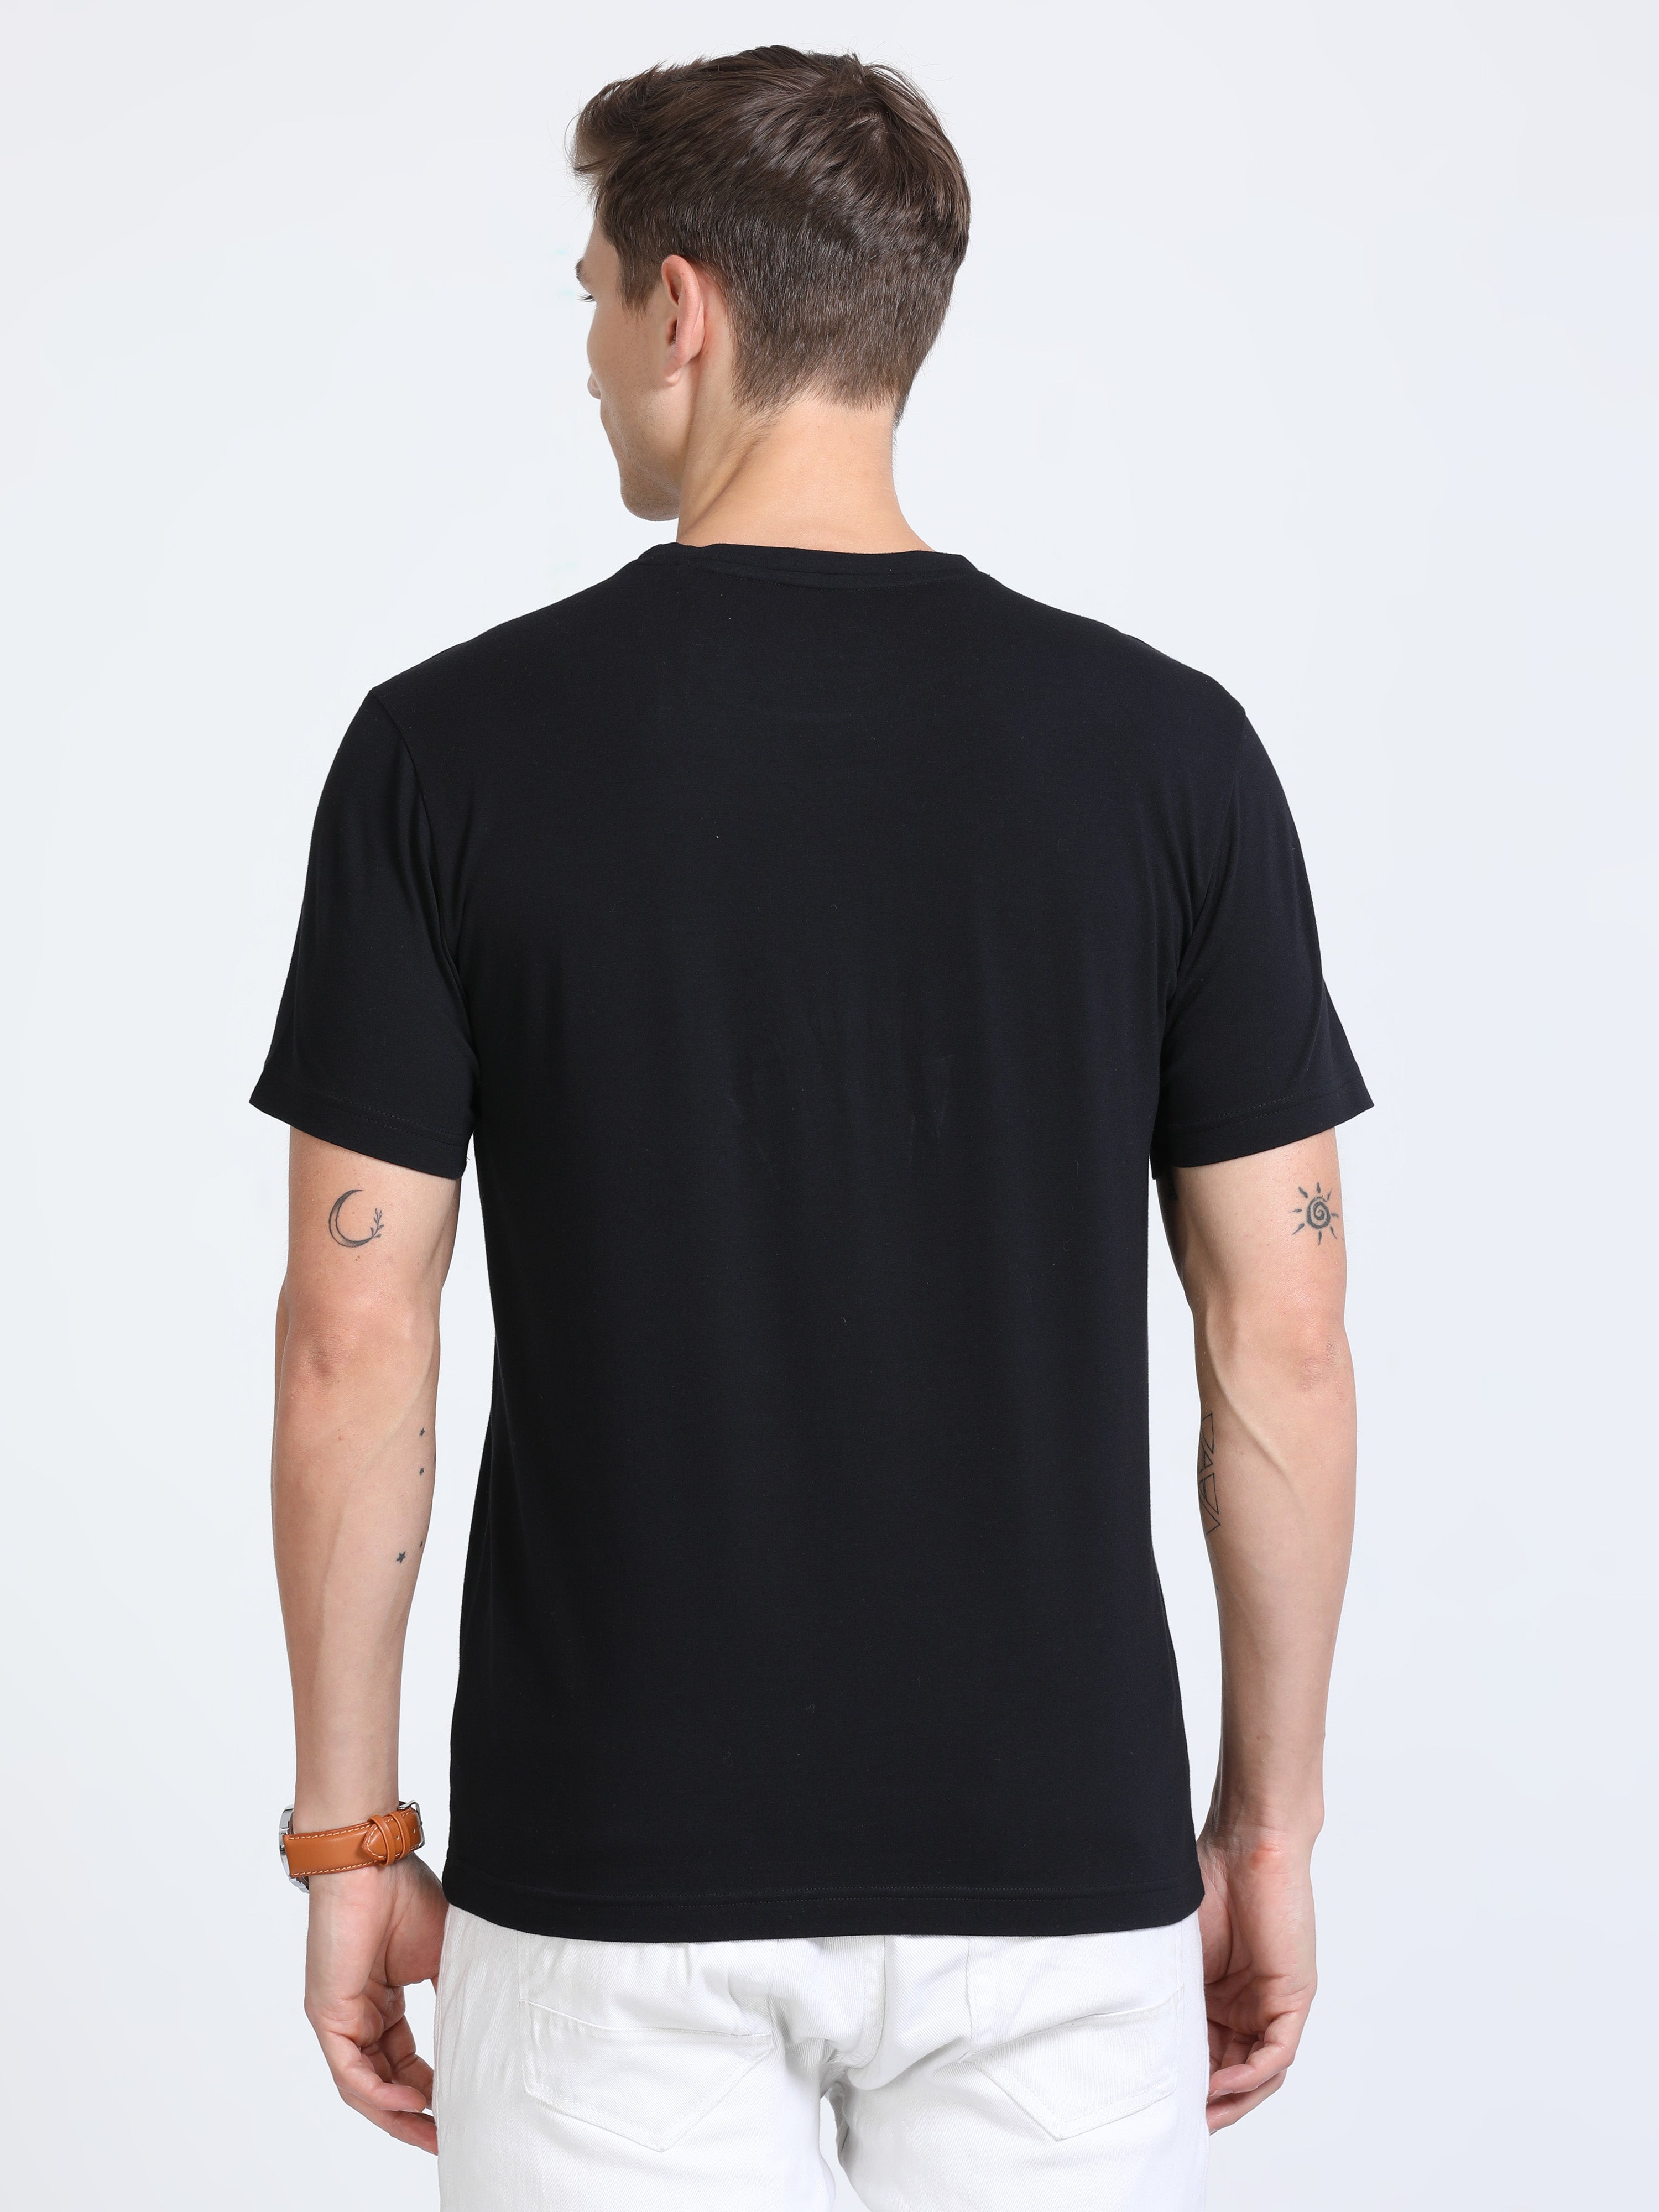 Buy CP BRO Men's Slim Fit T-Shirt (BRP - 356 B SF P_Multicolor_M